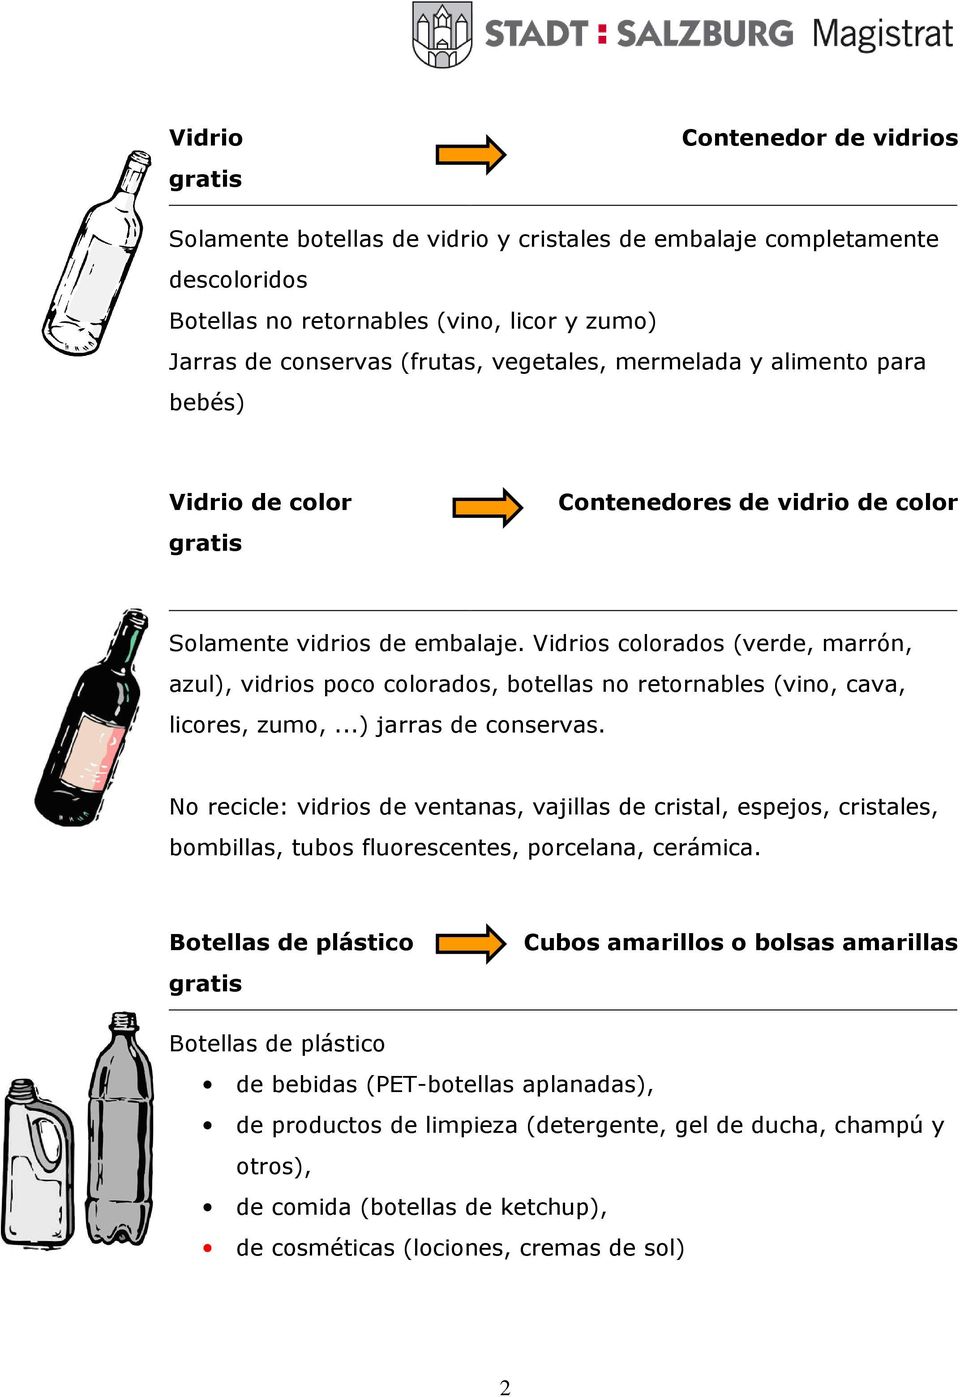 Vidrios colorados (verde, marrón, azul), vidrios poco colorados, botellas no retornables (vino, cava, licores, zumo,...) jarras de conservas.